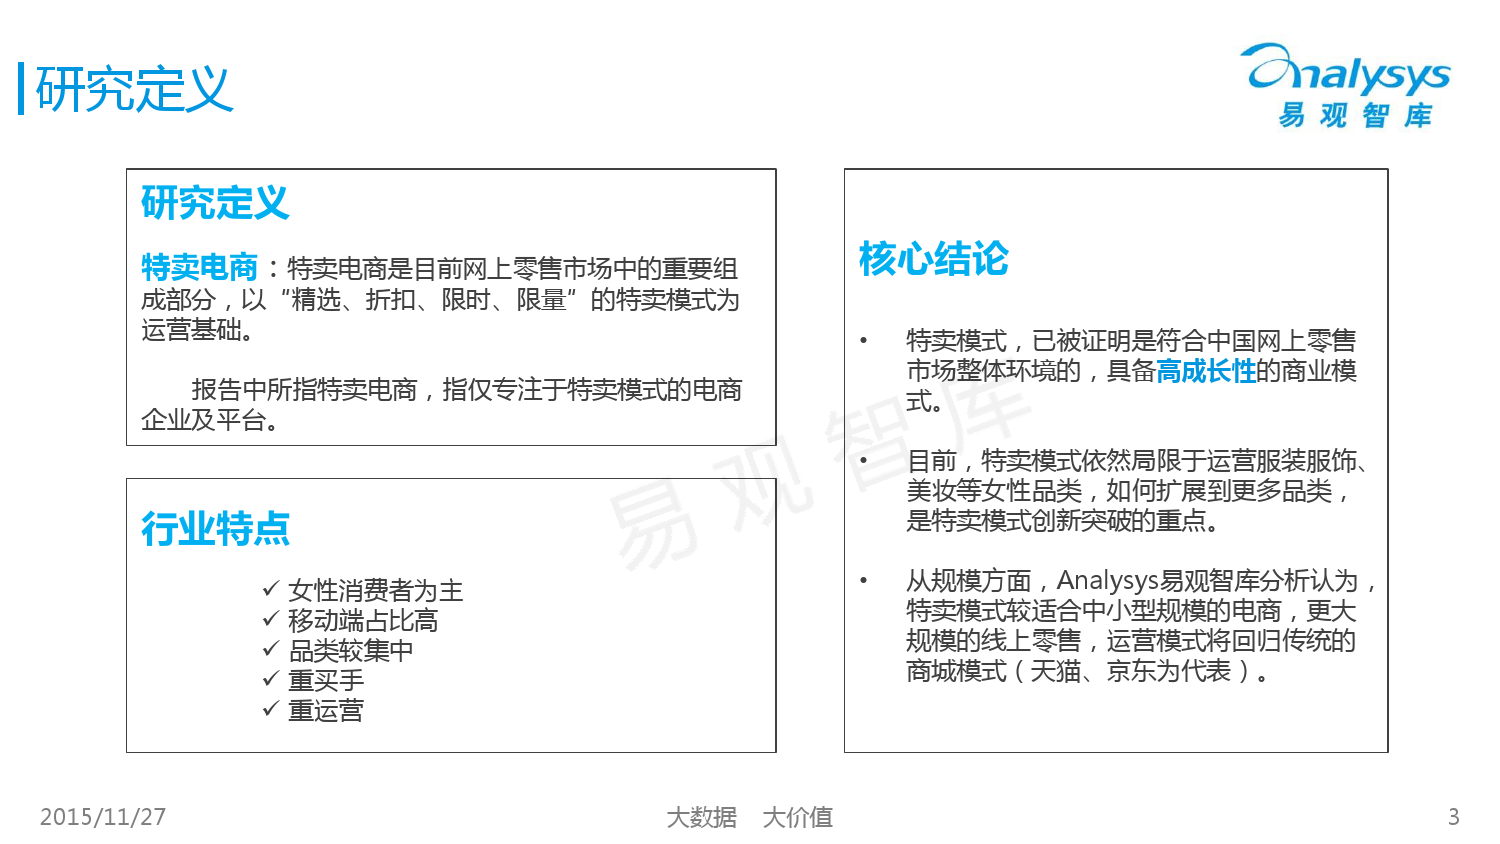 中国女性特卖电商市场专题研究报告2015 01_000003